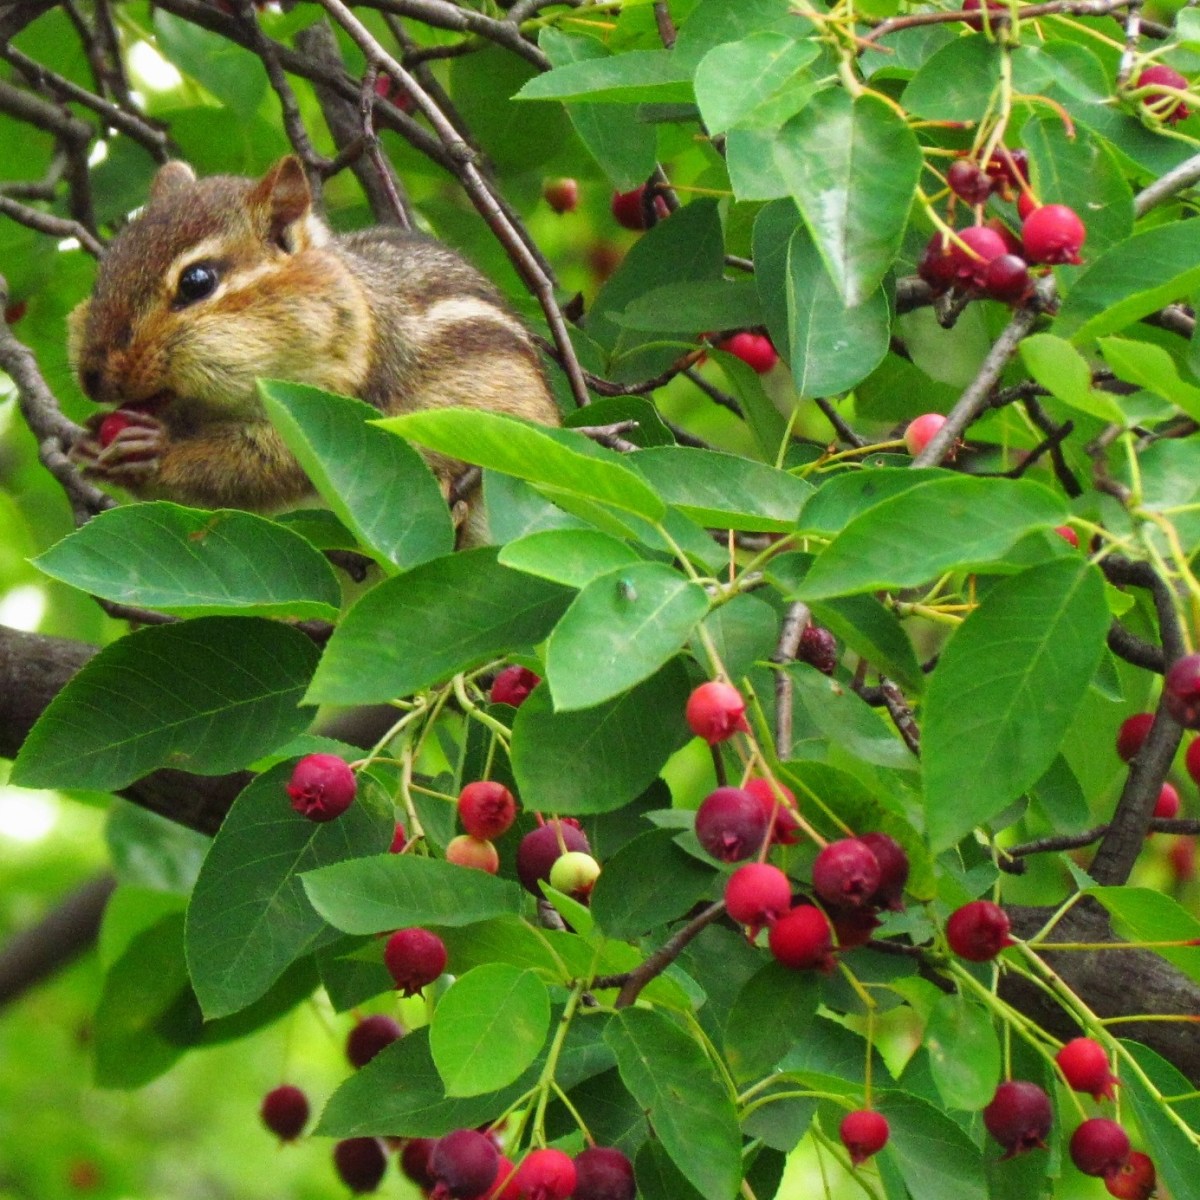 Chipmunk eating berries from tree